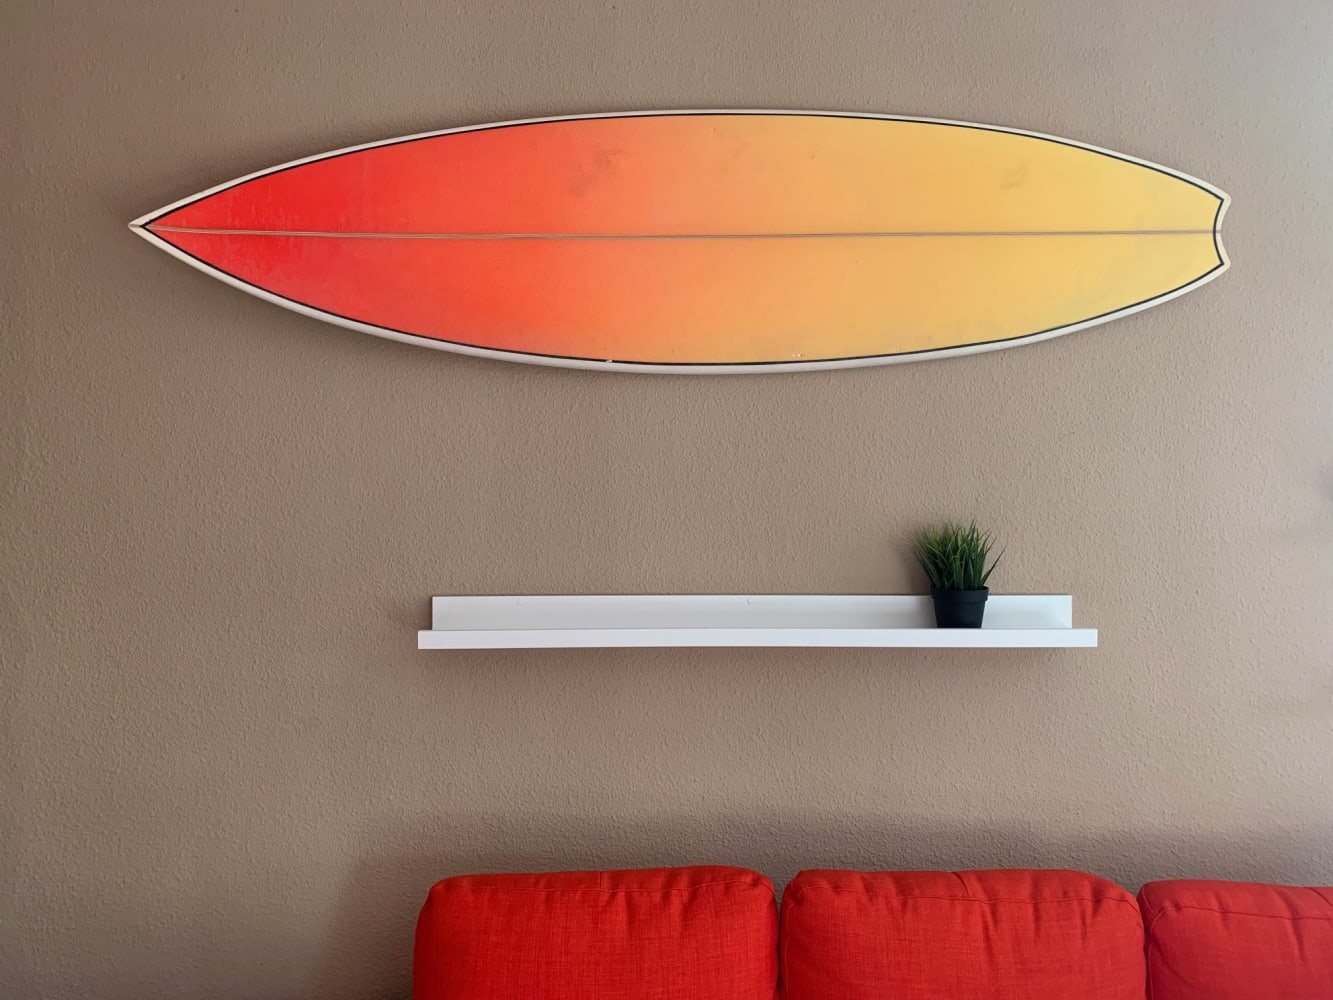 Engañoso Escribe email Biblia 12 ideas para decorar tu casa con tablas de surf